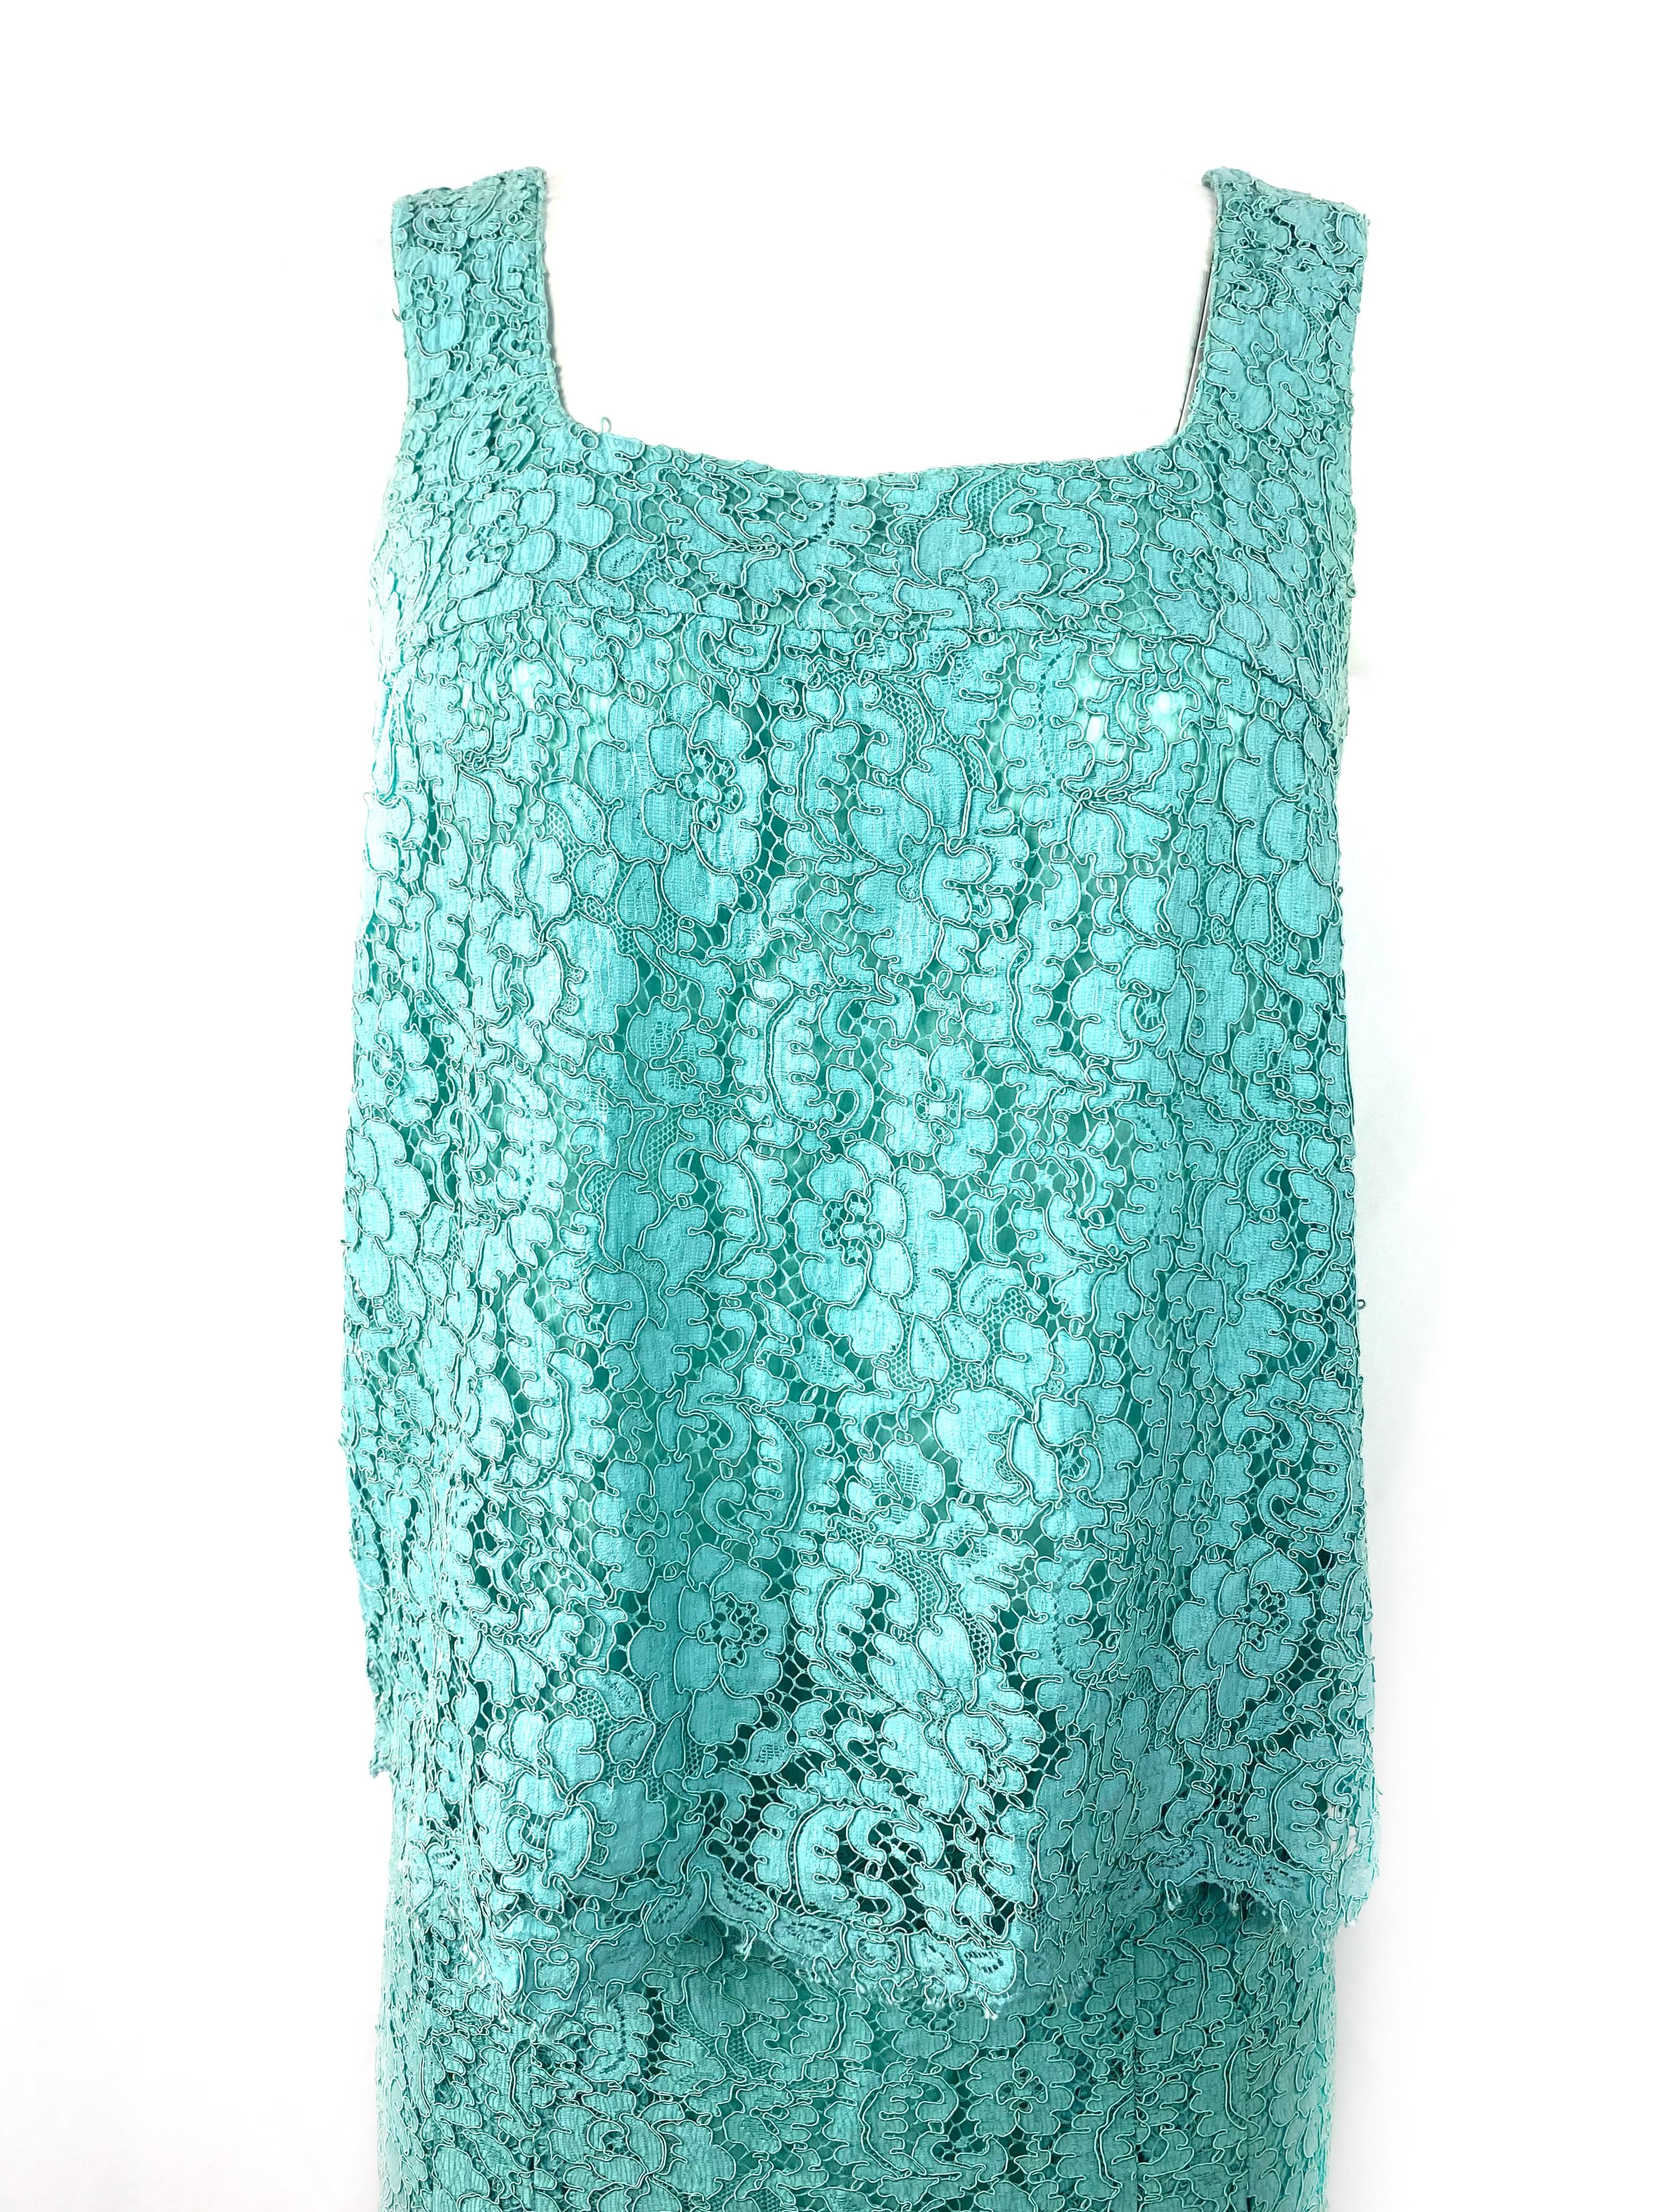 Détails du produit :

Haut turquoise à manches courtes et mini-jupe évasée à motif de dentelle florale. 
Les deux tailles 40. 
Mesures du haut : buste de 33,5